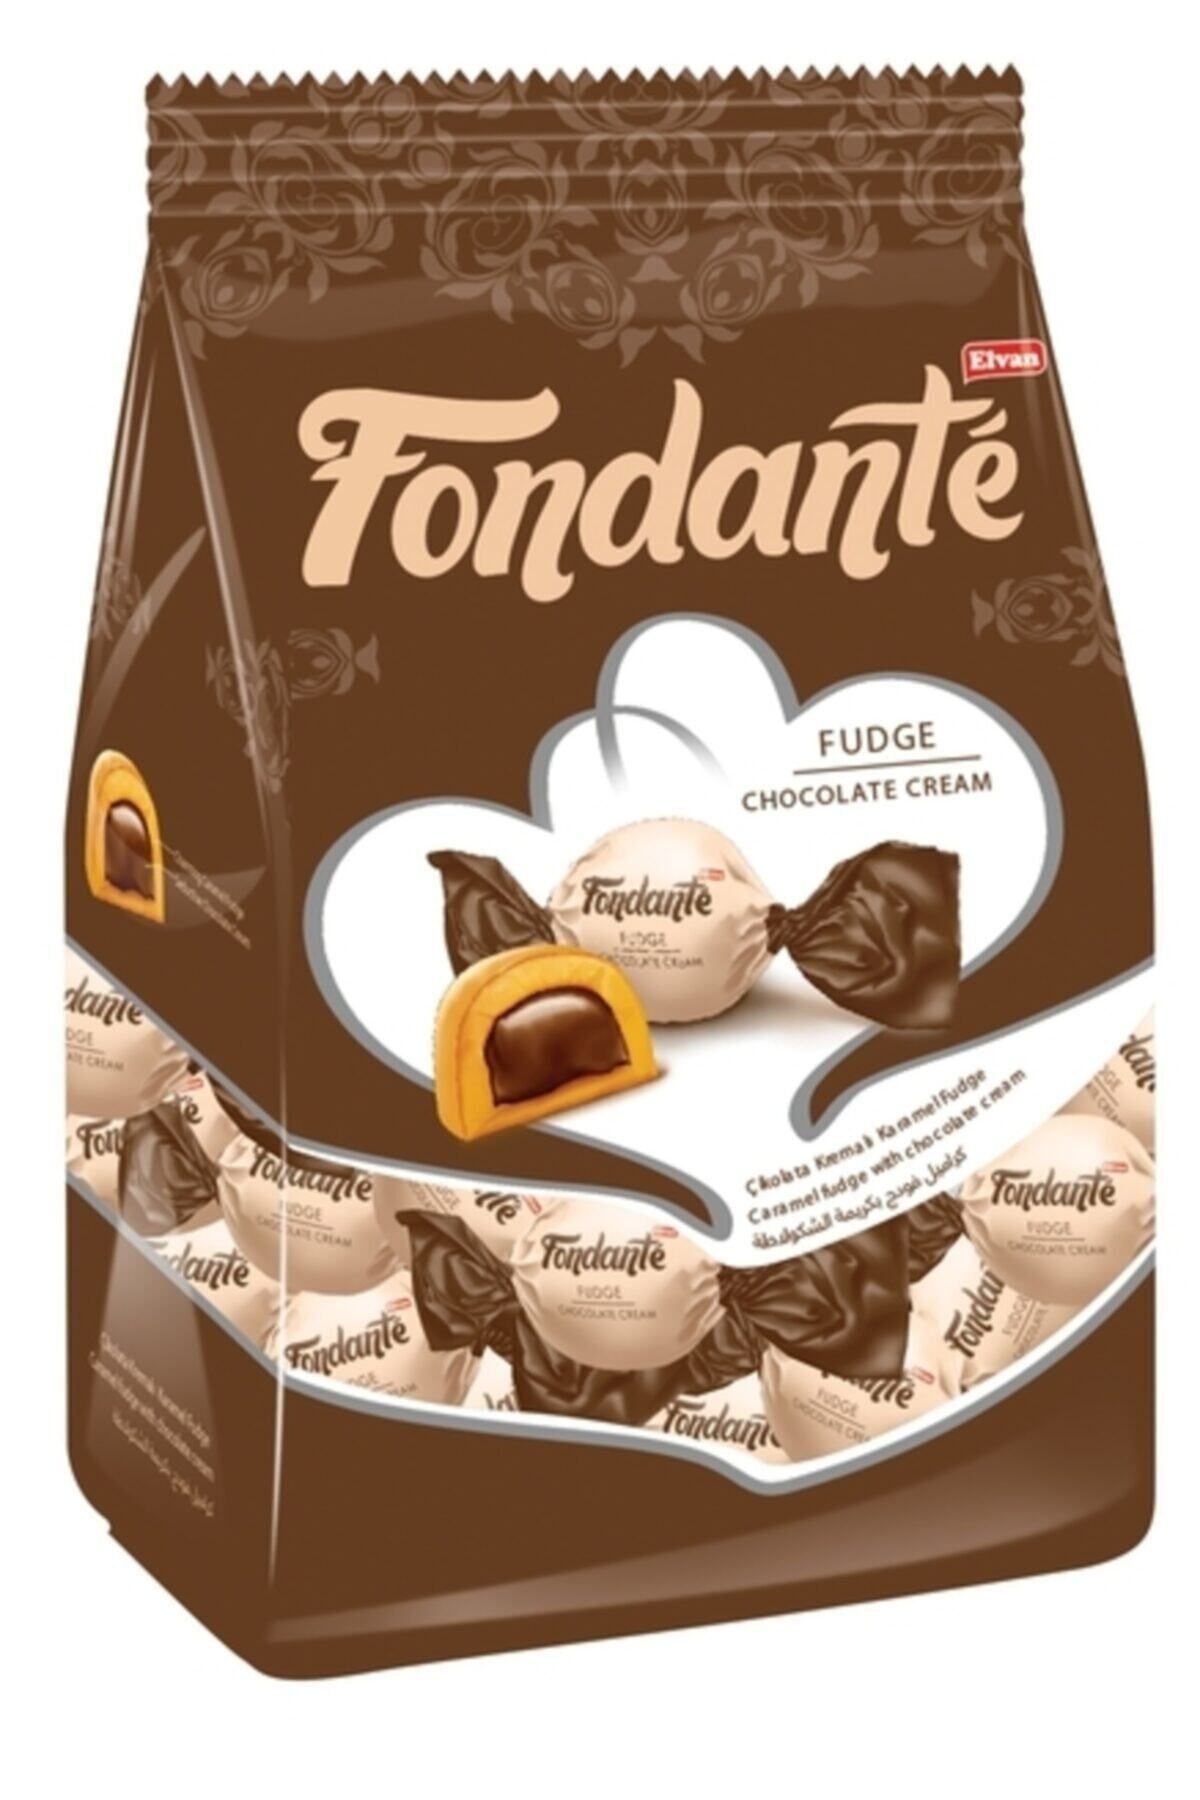 Fondante Fudge Çikolata Kremalı 1000 Gr. (1 Poşet)